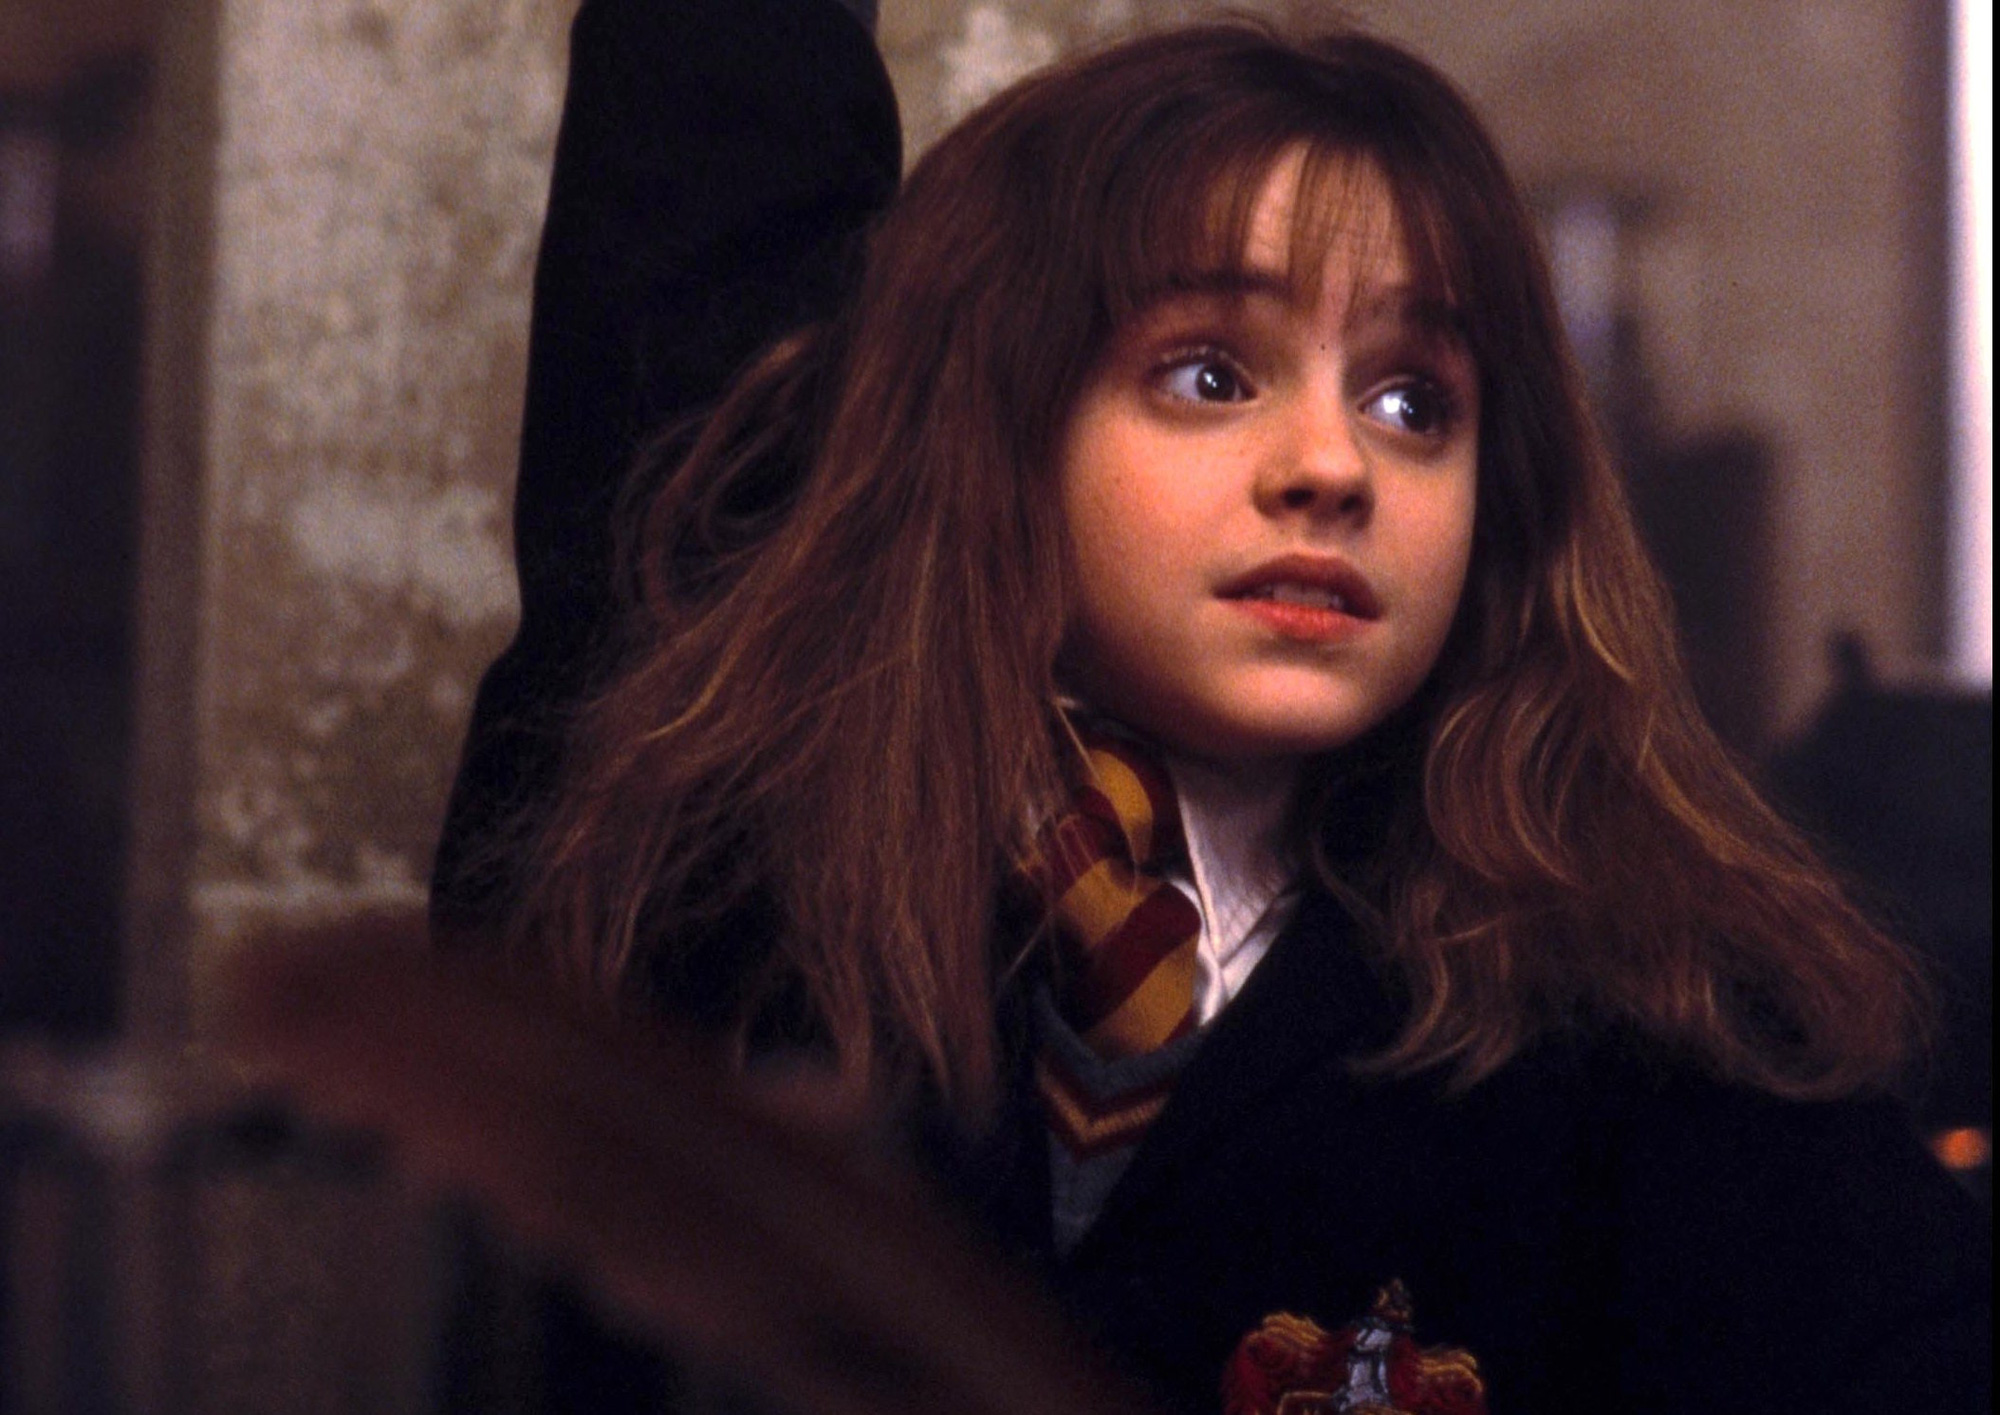 Sự thật về những người phụ nữ trong Harry Potter khiến fan quặn thắt: Hermione day dứt 1 nỗi sợ khó nói, dì Petunia đã sống cả đời khổ đau? - Ảnh 5.